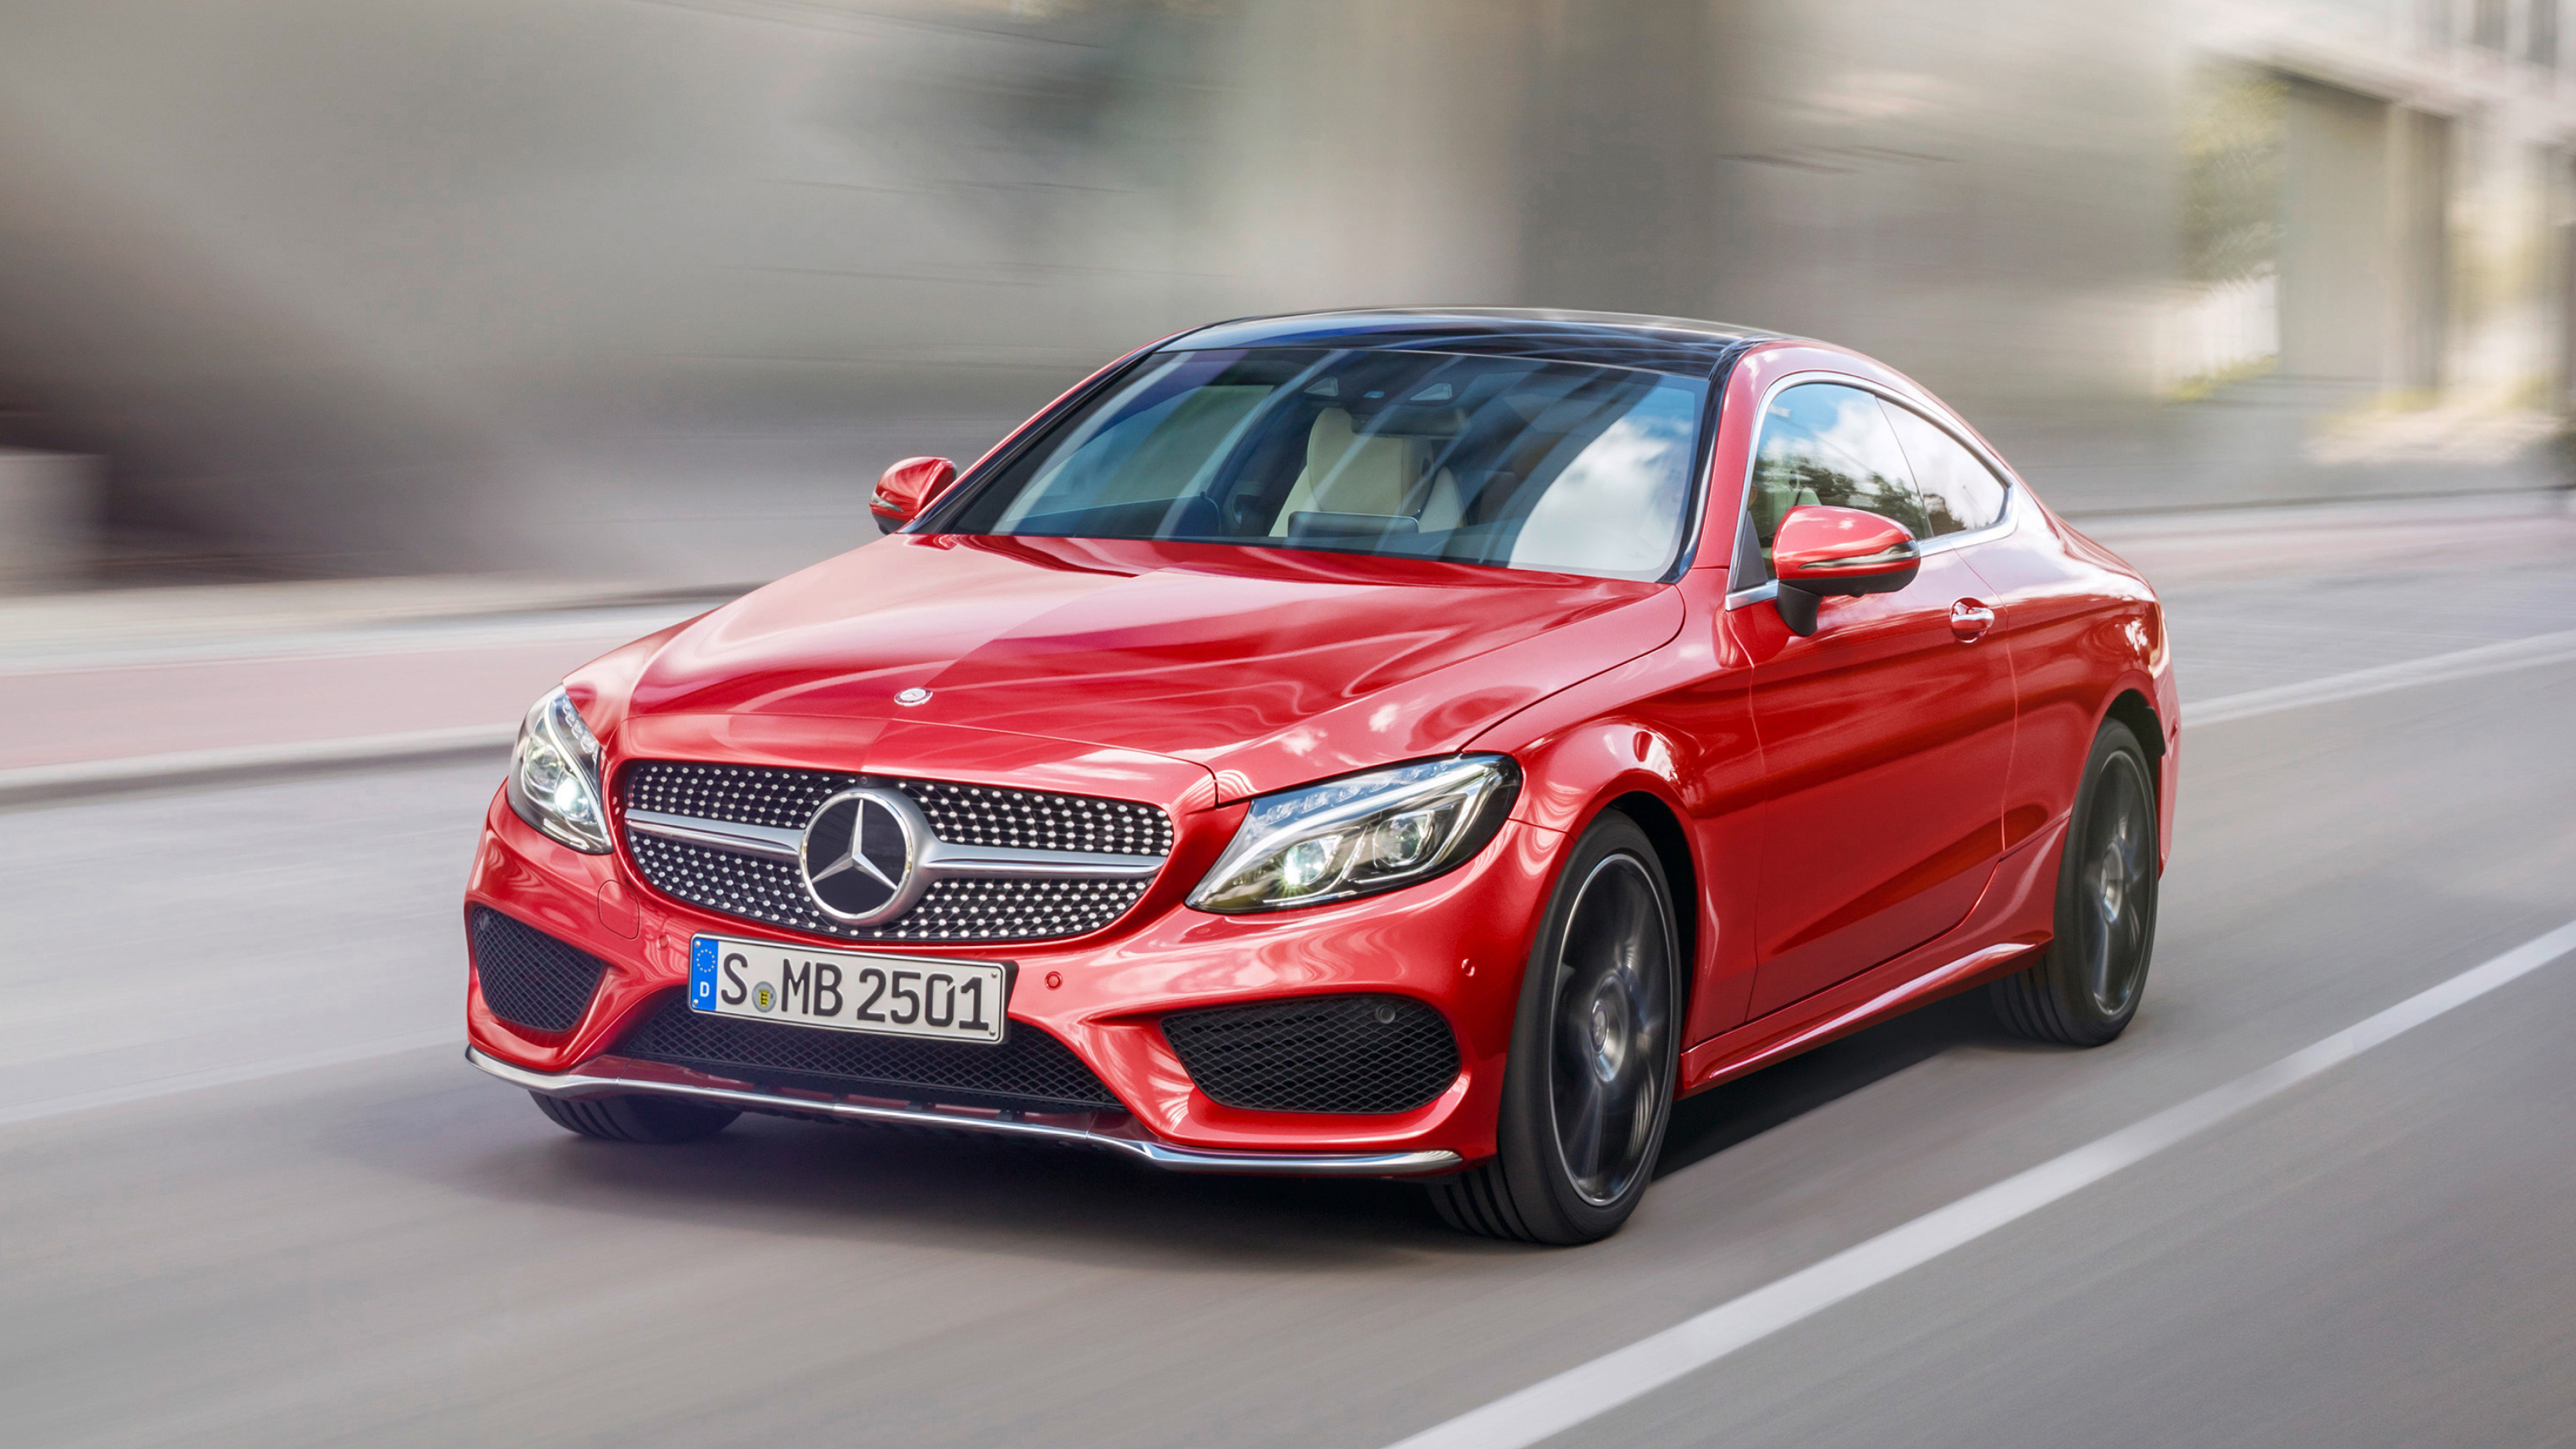 Mercedes-Benz C-Class, Coupe cars, Stunning aesthetics, Ultra HD visuals, 3840x2160 4K Desktop